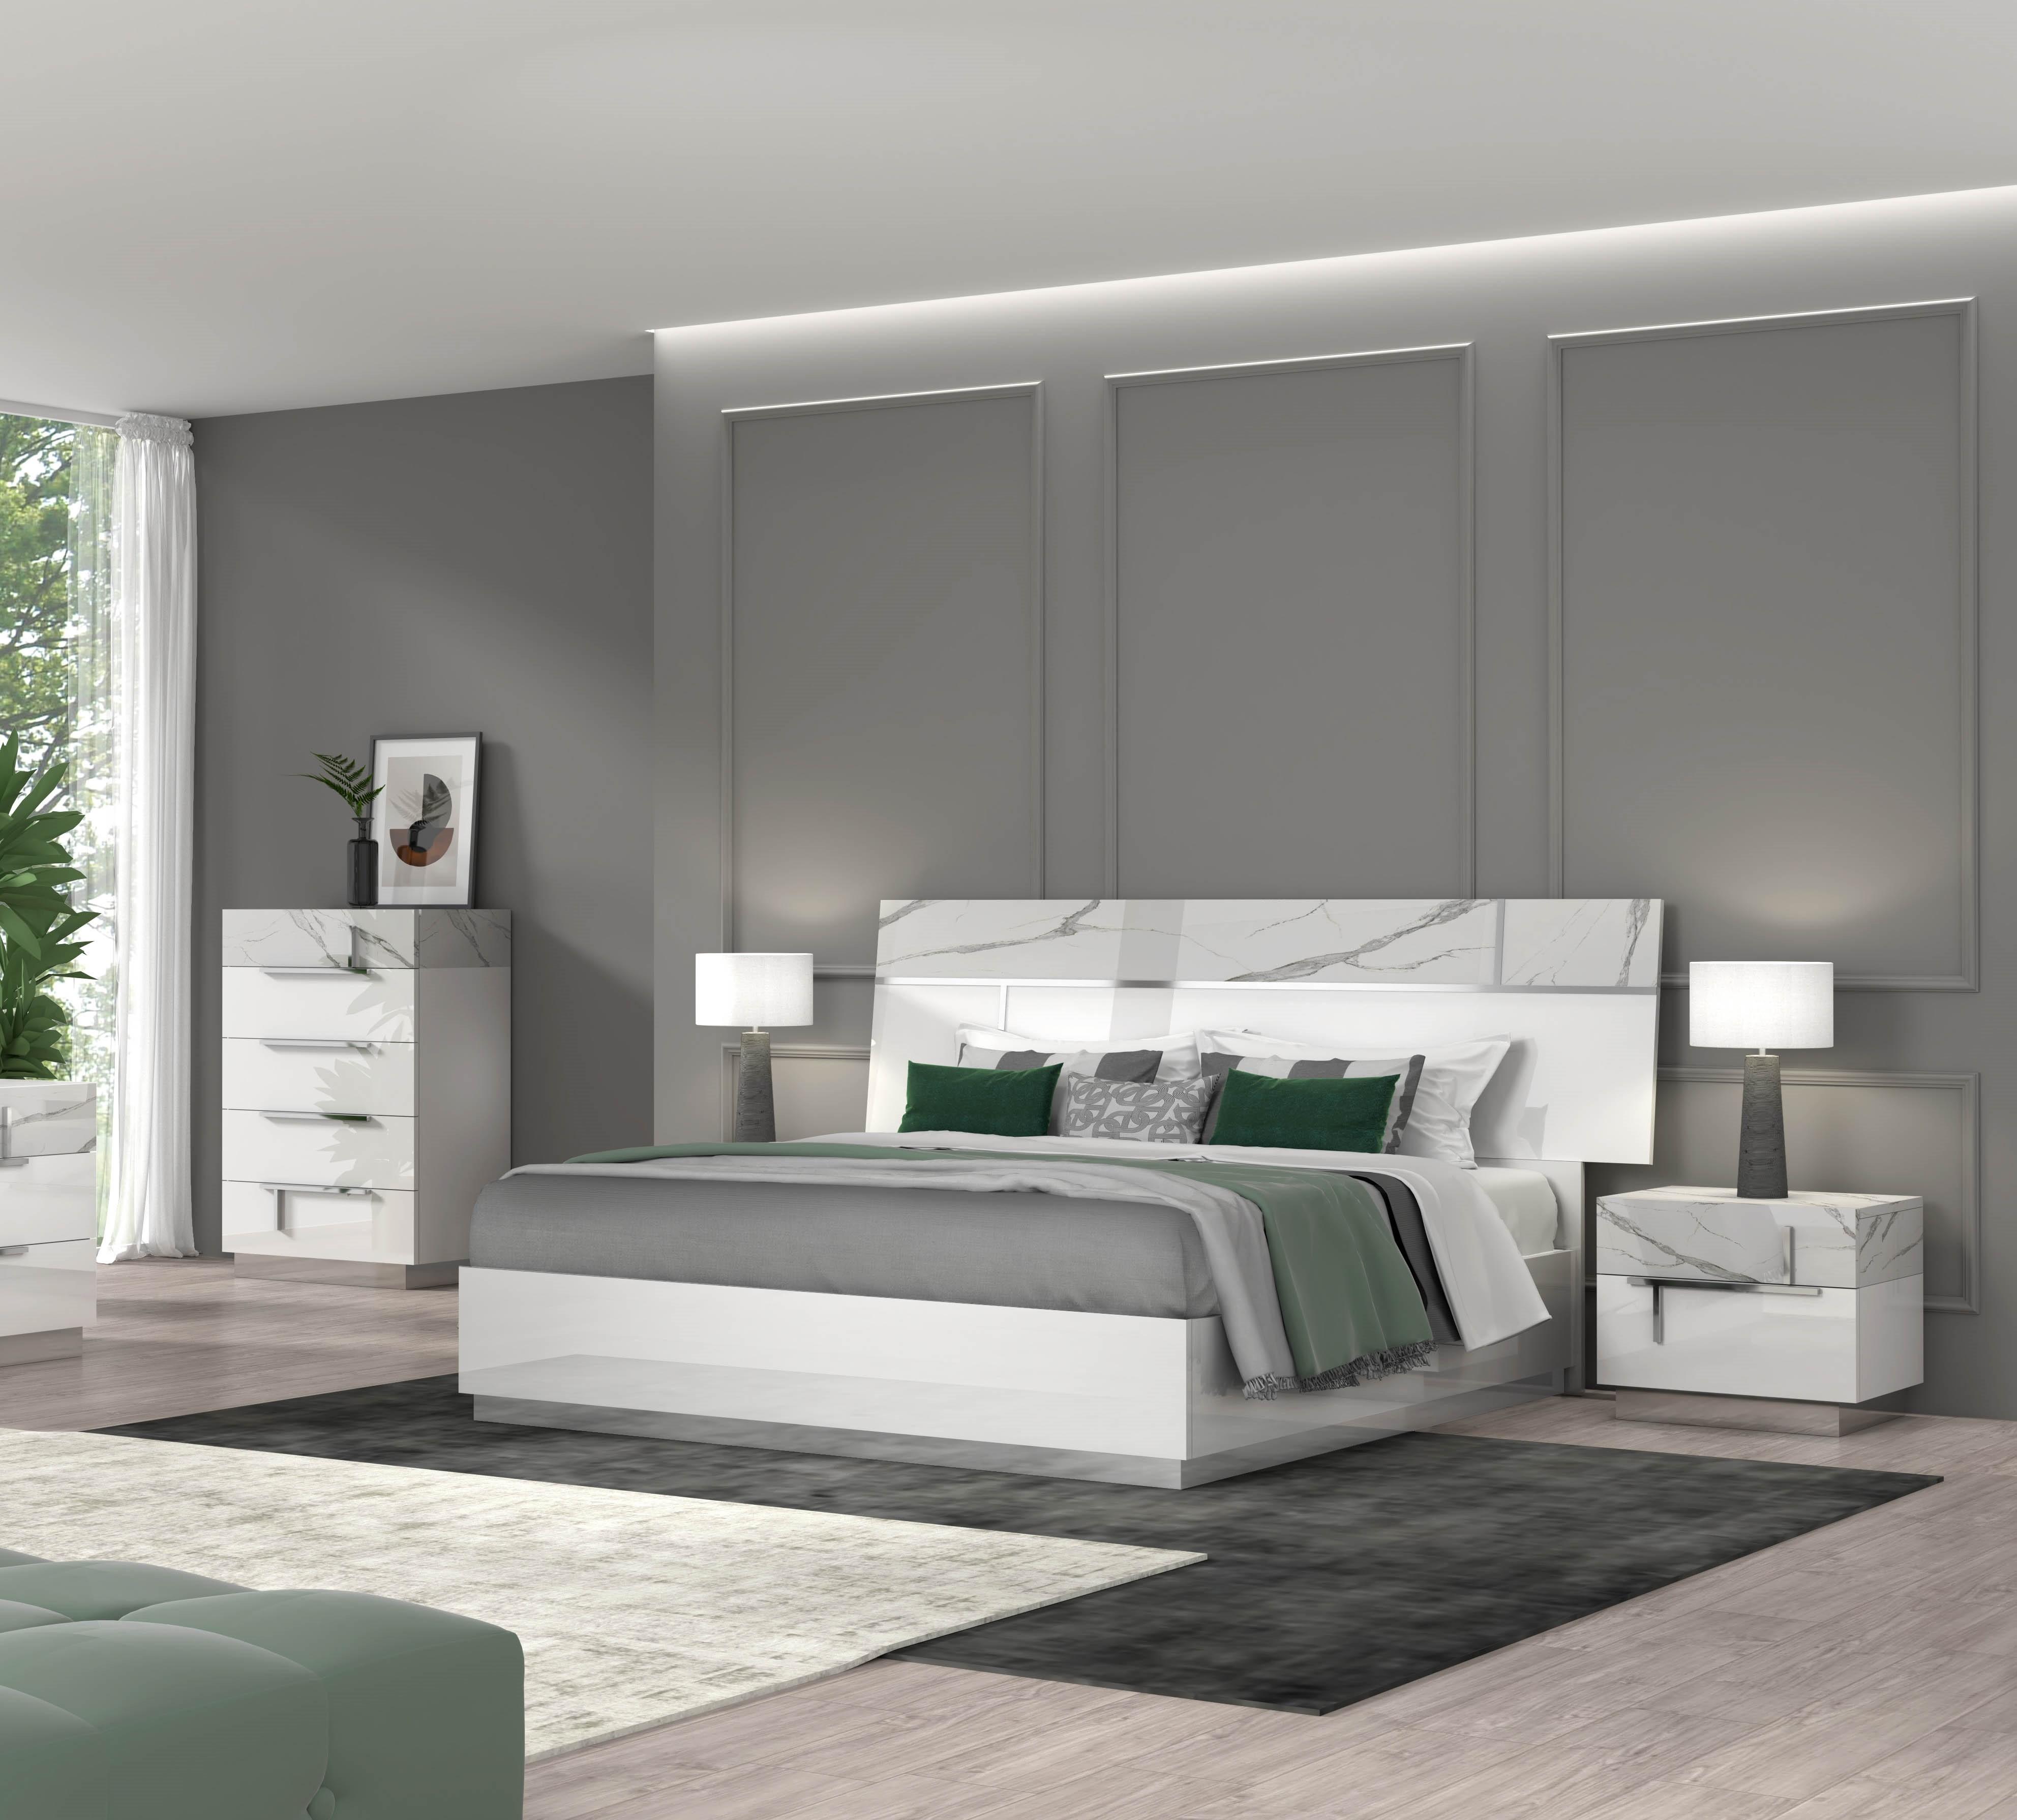 

    
Carrara Marble Finish King Size Premium Bedroom Set 3Pcs Modern J&M Sunset
